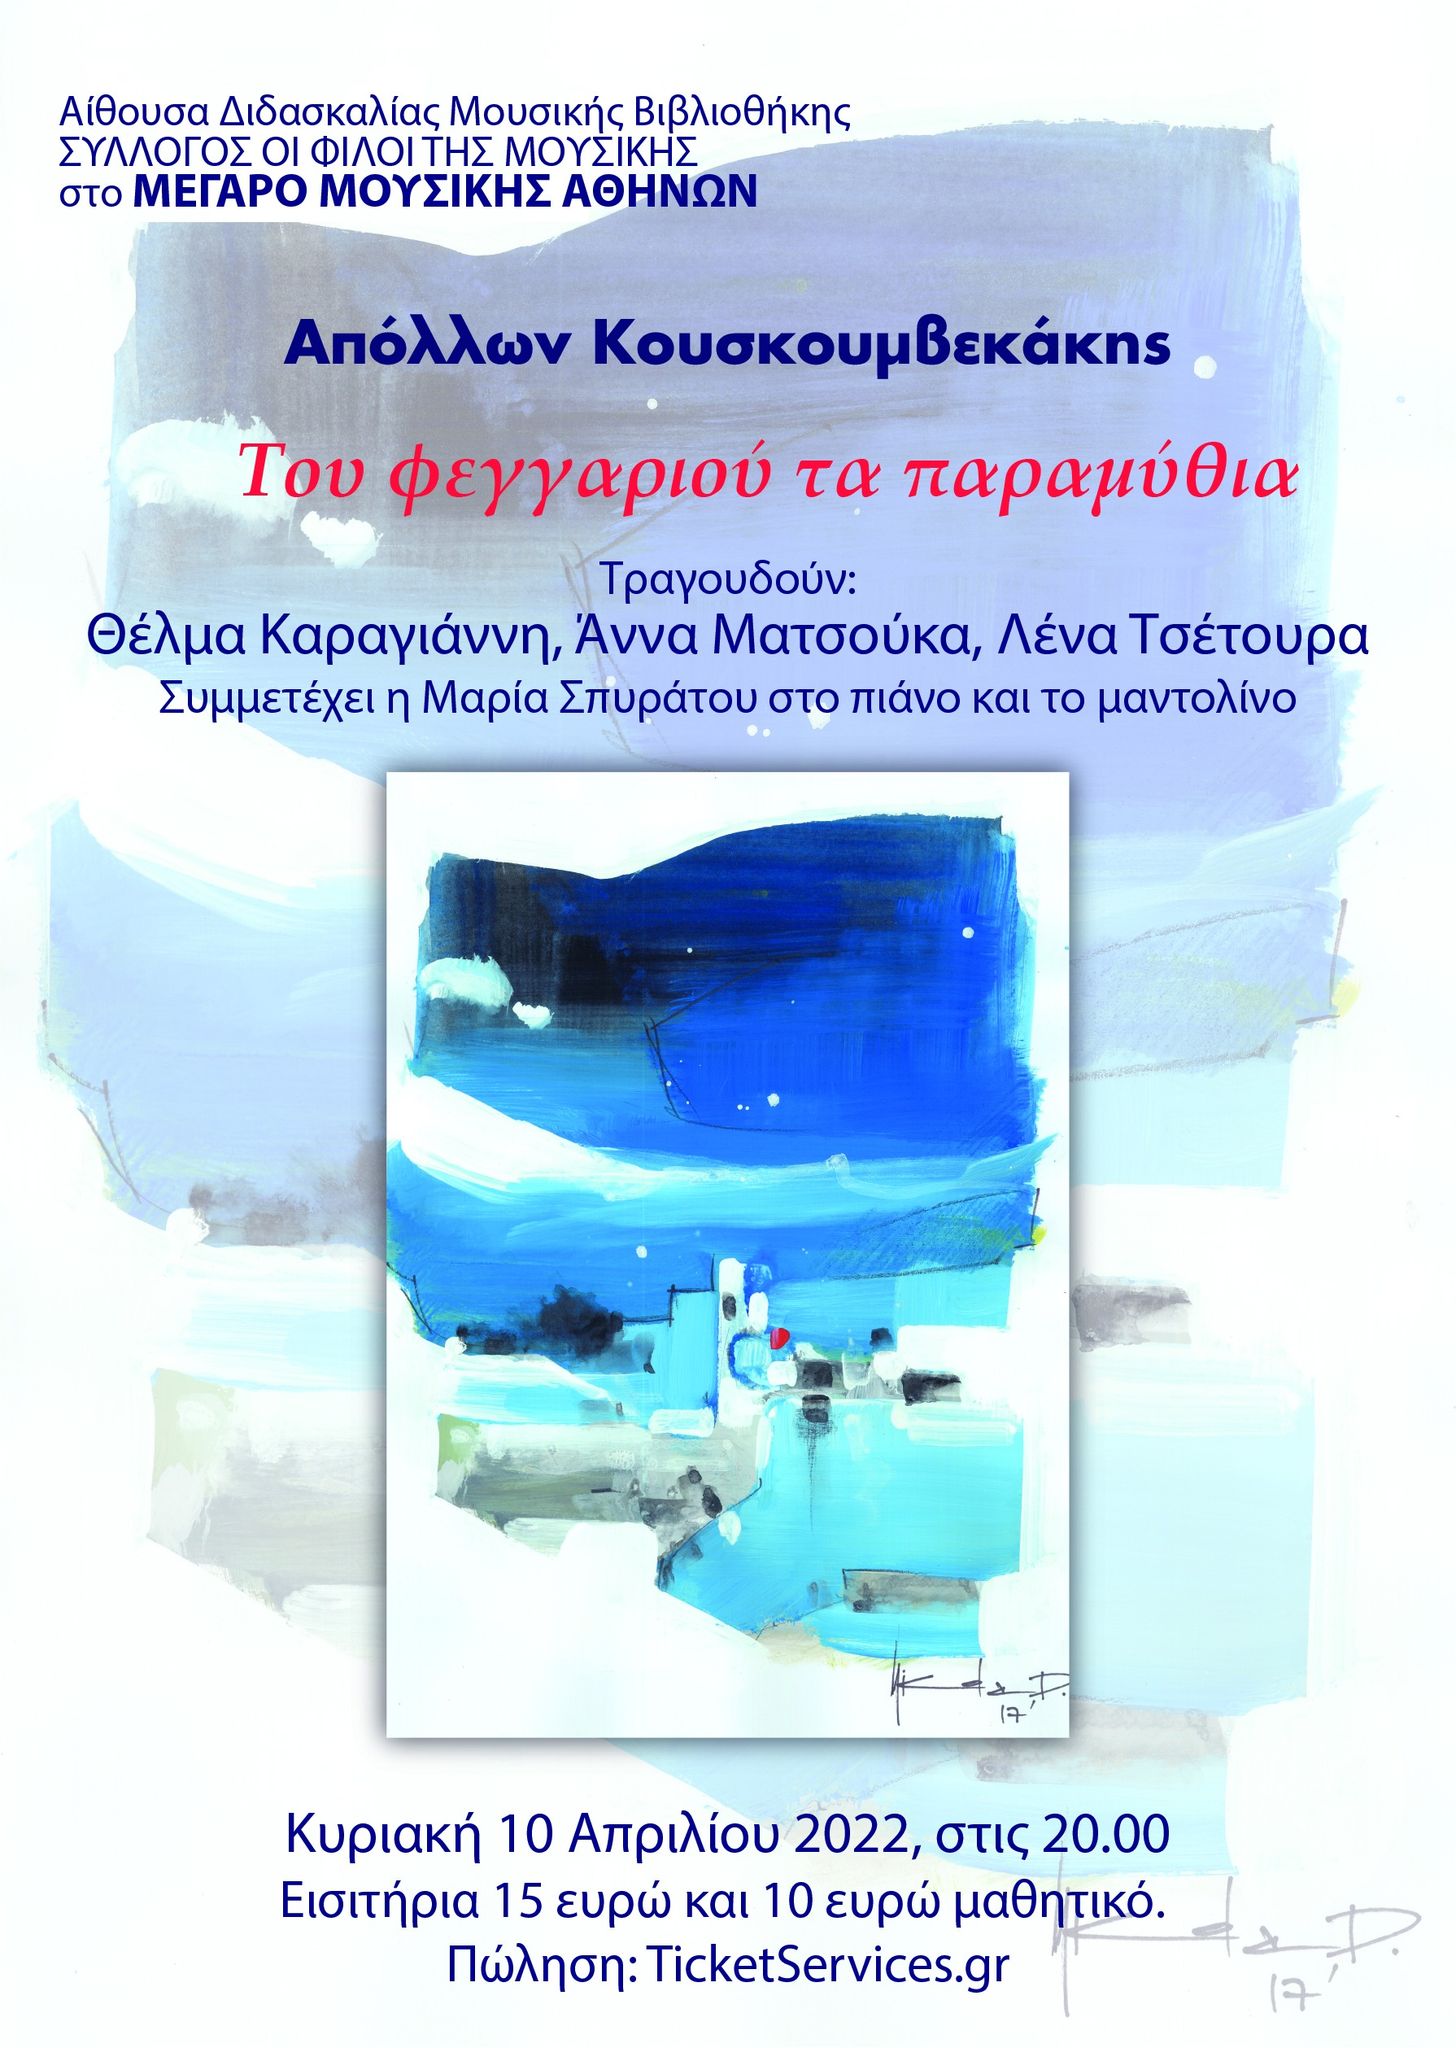 Απόλλων Κουσκουμβεκάκης: «Του φεγγαριού τα παραμύθια»